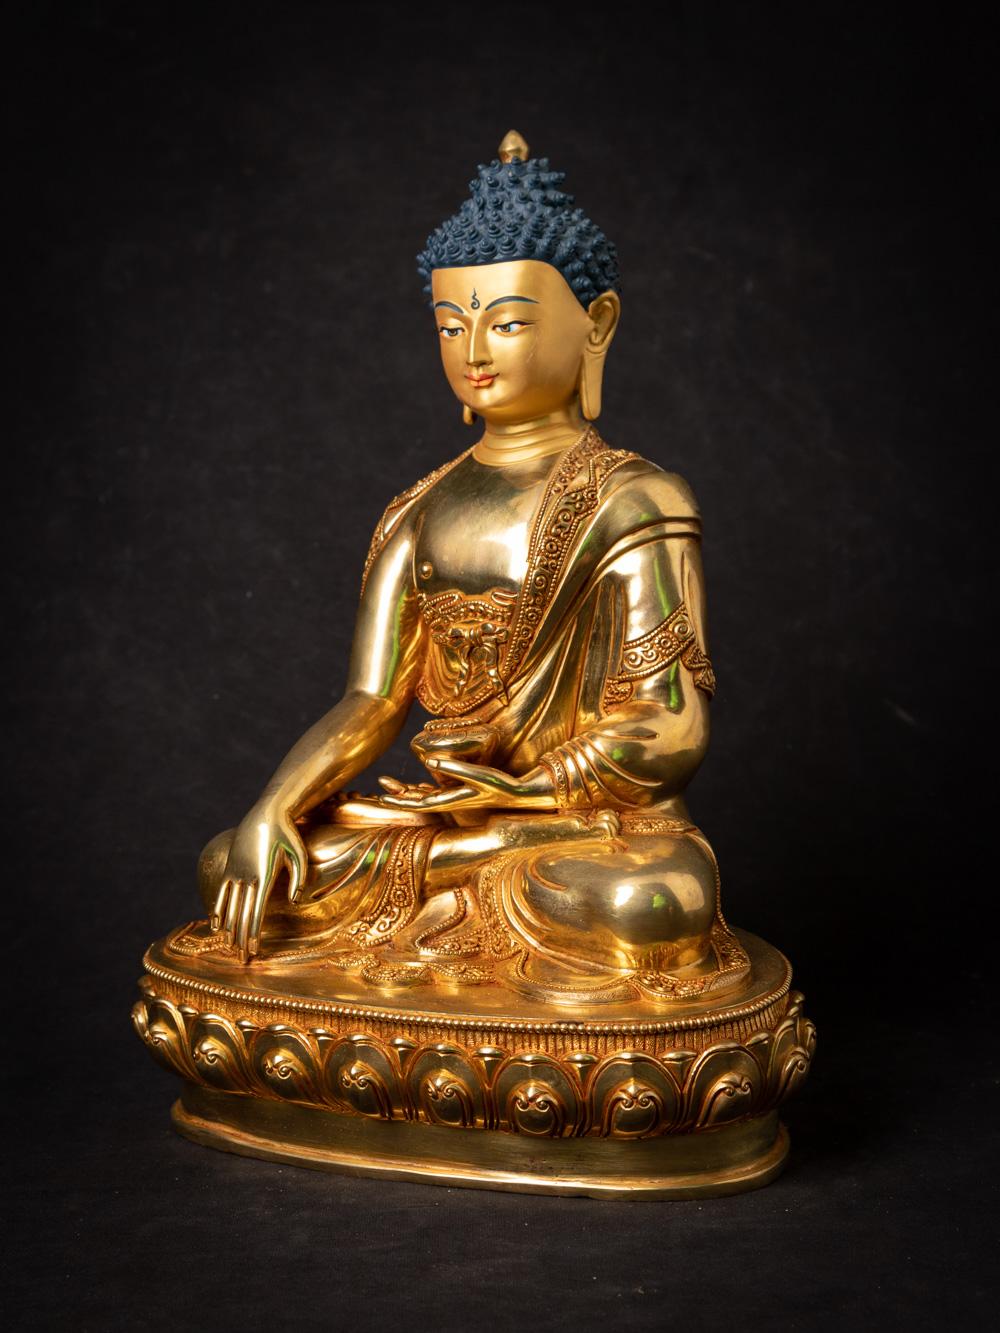 Der hochwertige Nepali Gold-Face Buddha ist ein wirklich exquisites und spirituell bedeutendes Artefakt aus Nepal. Die aus Bronze gefertigte und mit 24-karätigem Gold feuervergoldete Buddha-Statue ist 33,3 cm hoch und misst 24 cm in der Breite und